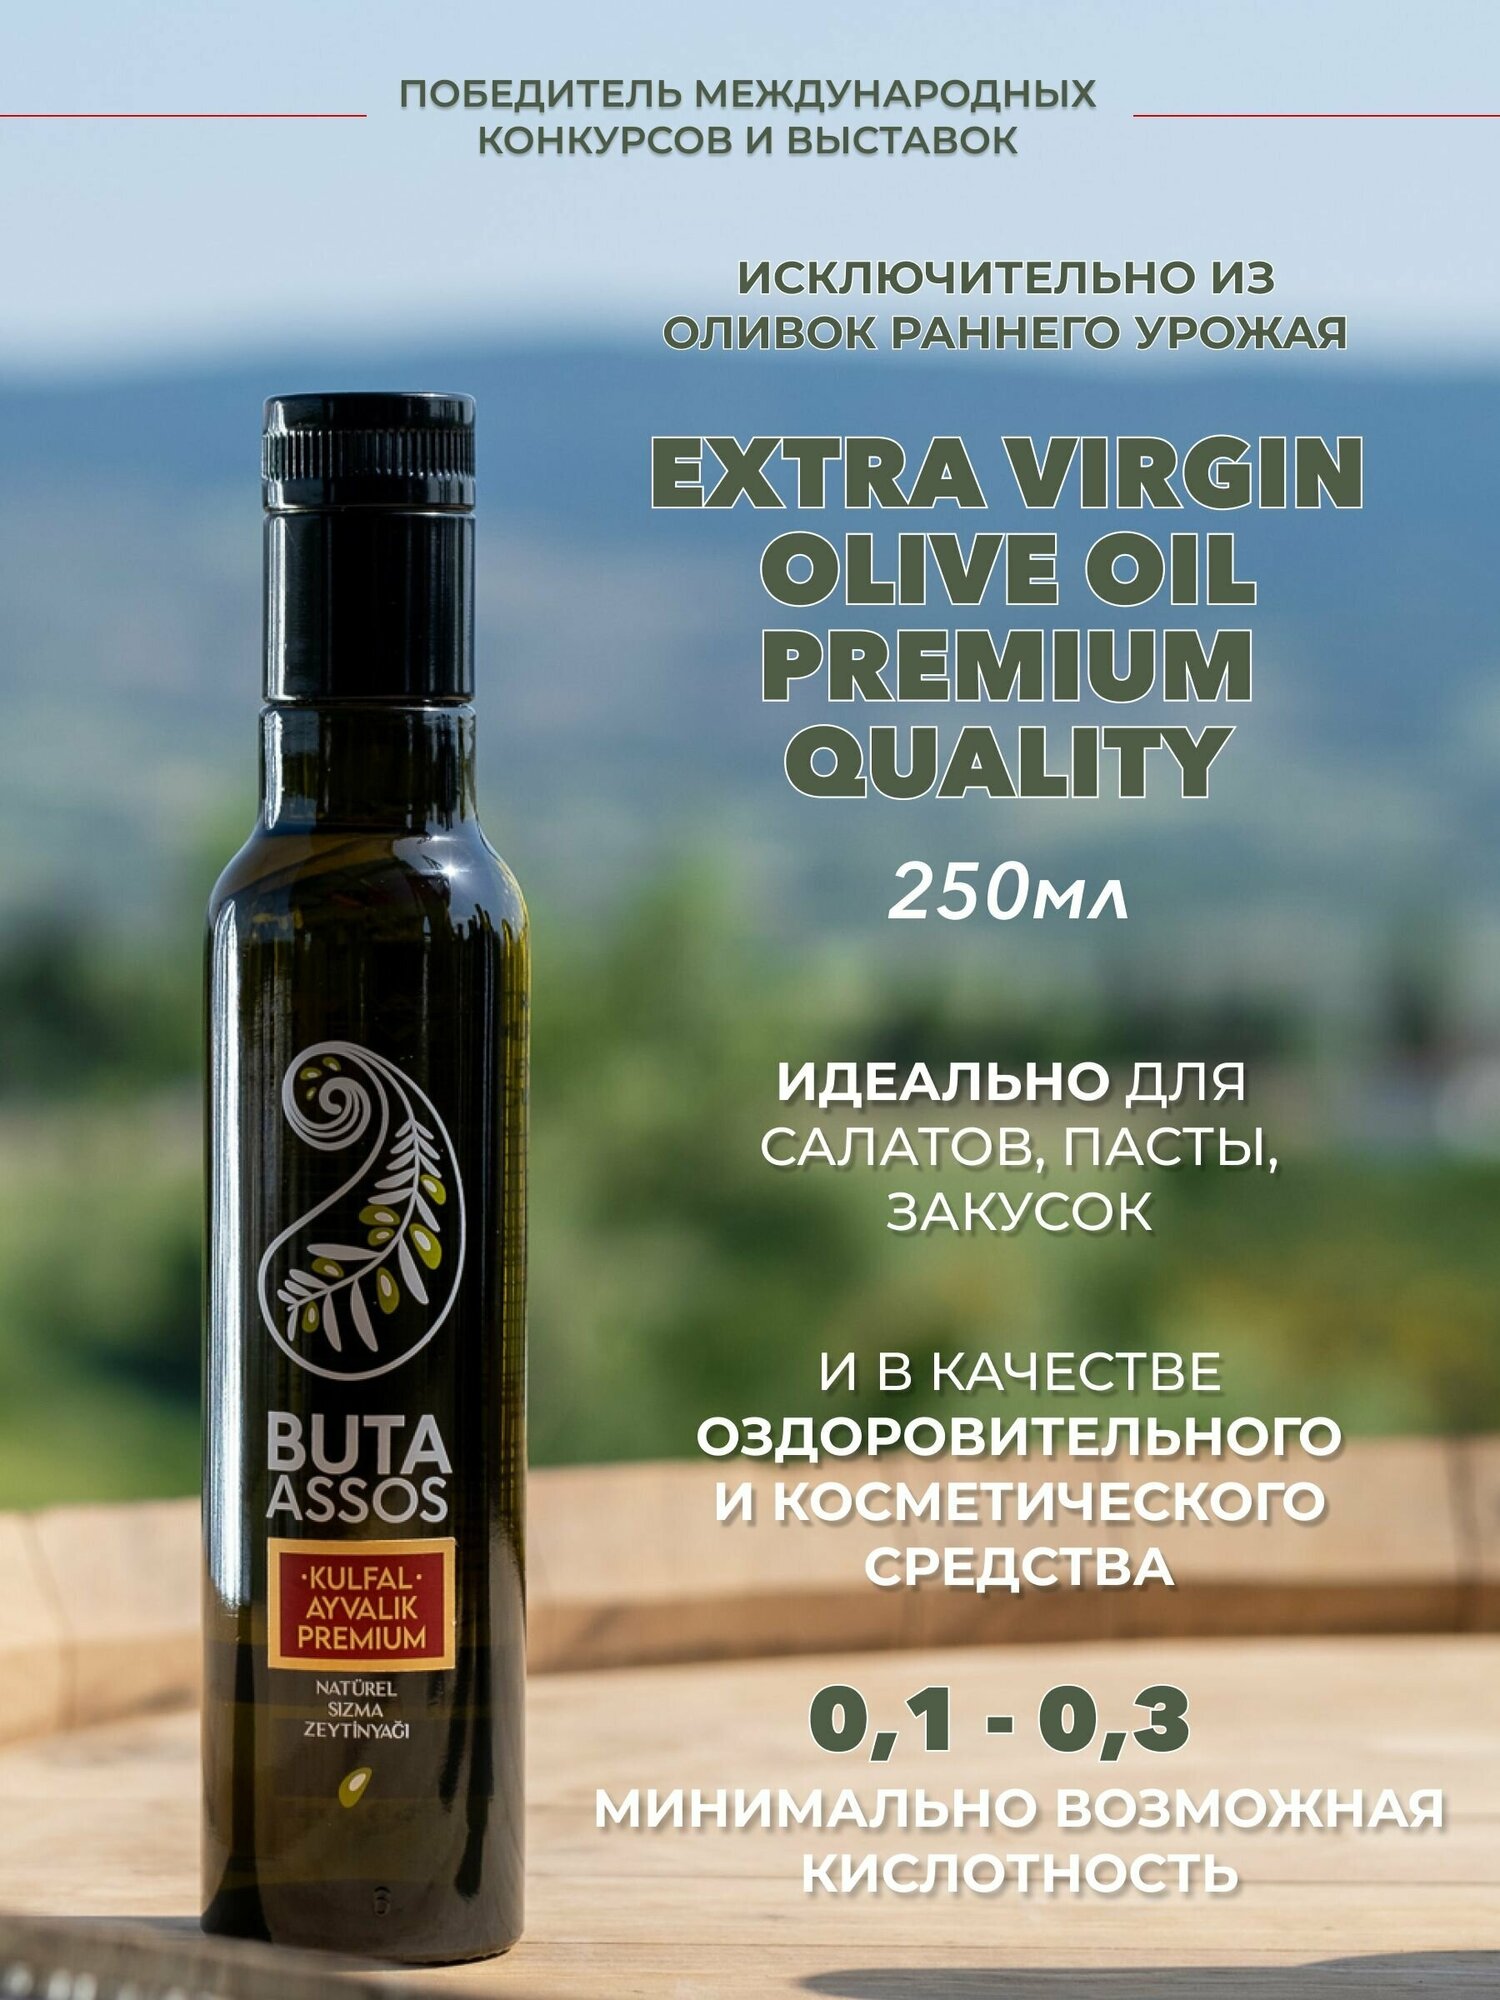 Масло оливковое нерафинированное высшего качества (Extra virgin olive oil) PREMIUM торговой марки BUTA ASSOS полифенольное из оливок раннего урожая